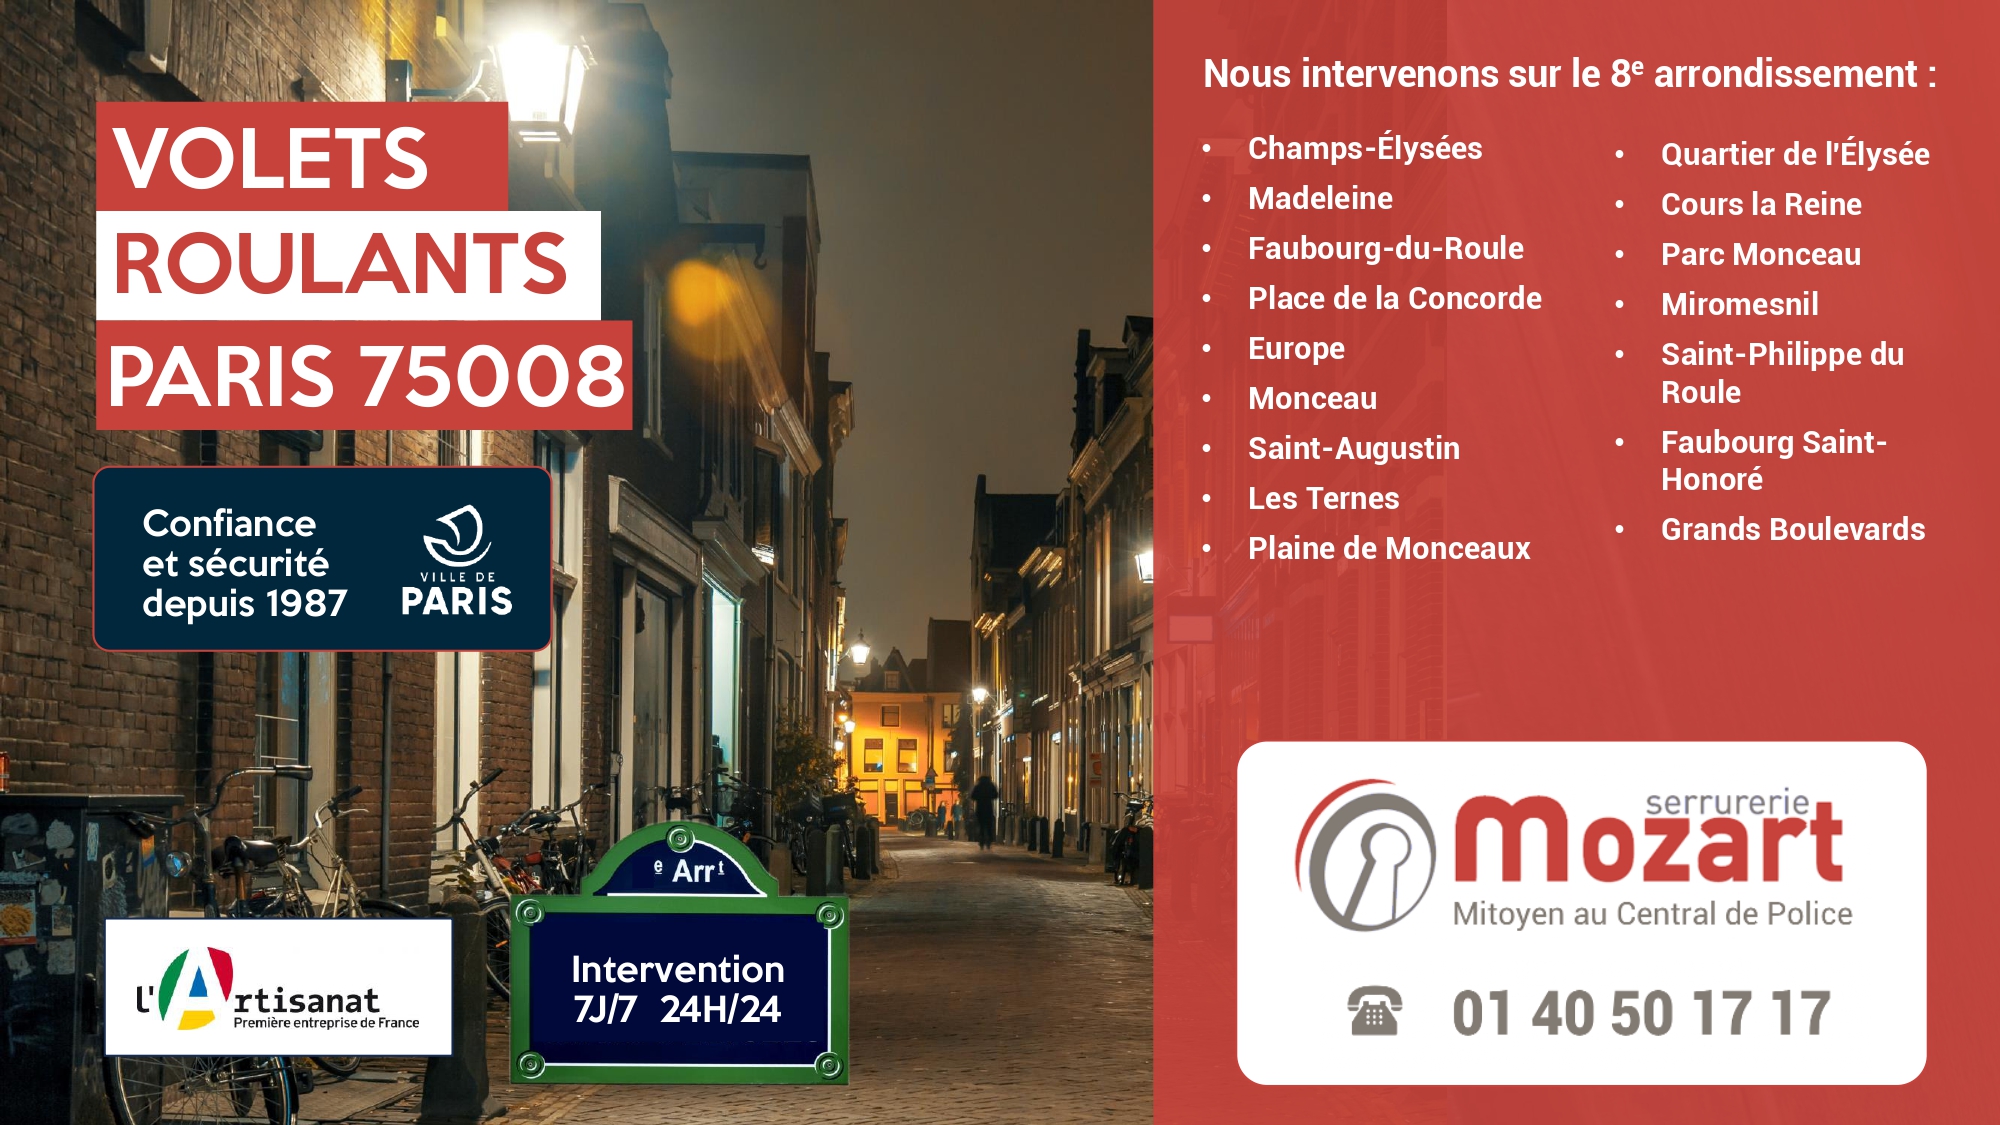 Volets Roulants Paris 8 - Serrurerie Mozart, 01 40 50 17 17, Rue du Faubourg Saint-Honoré